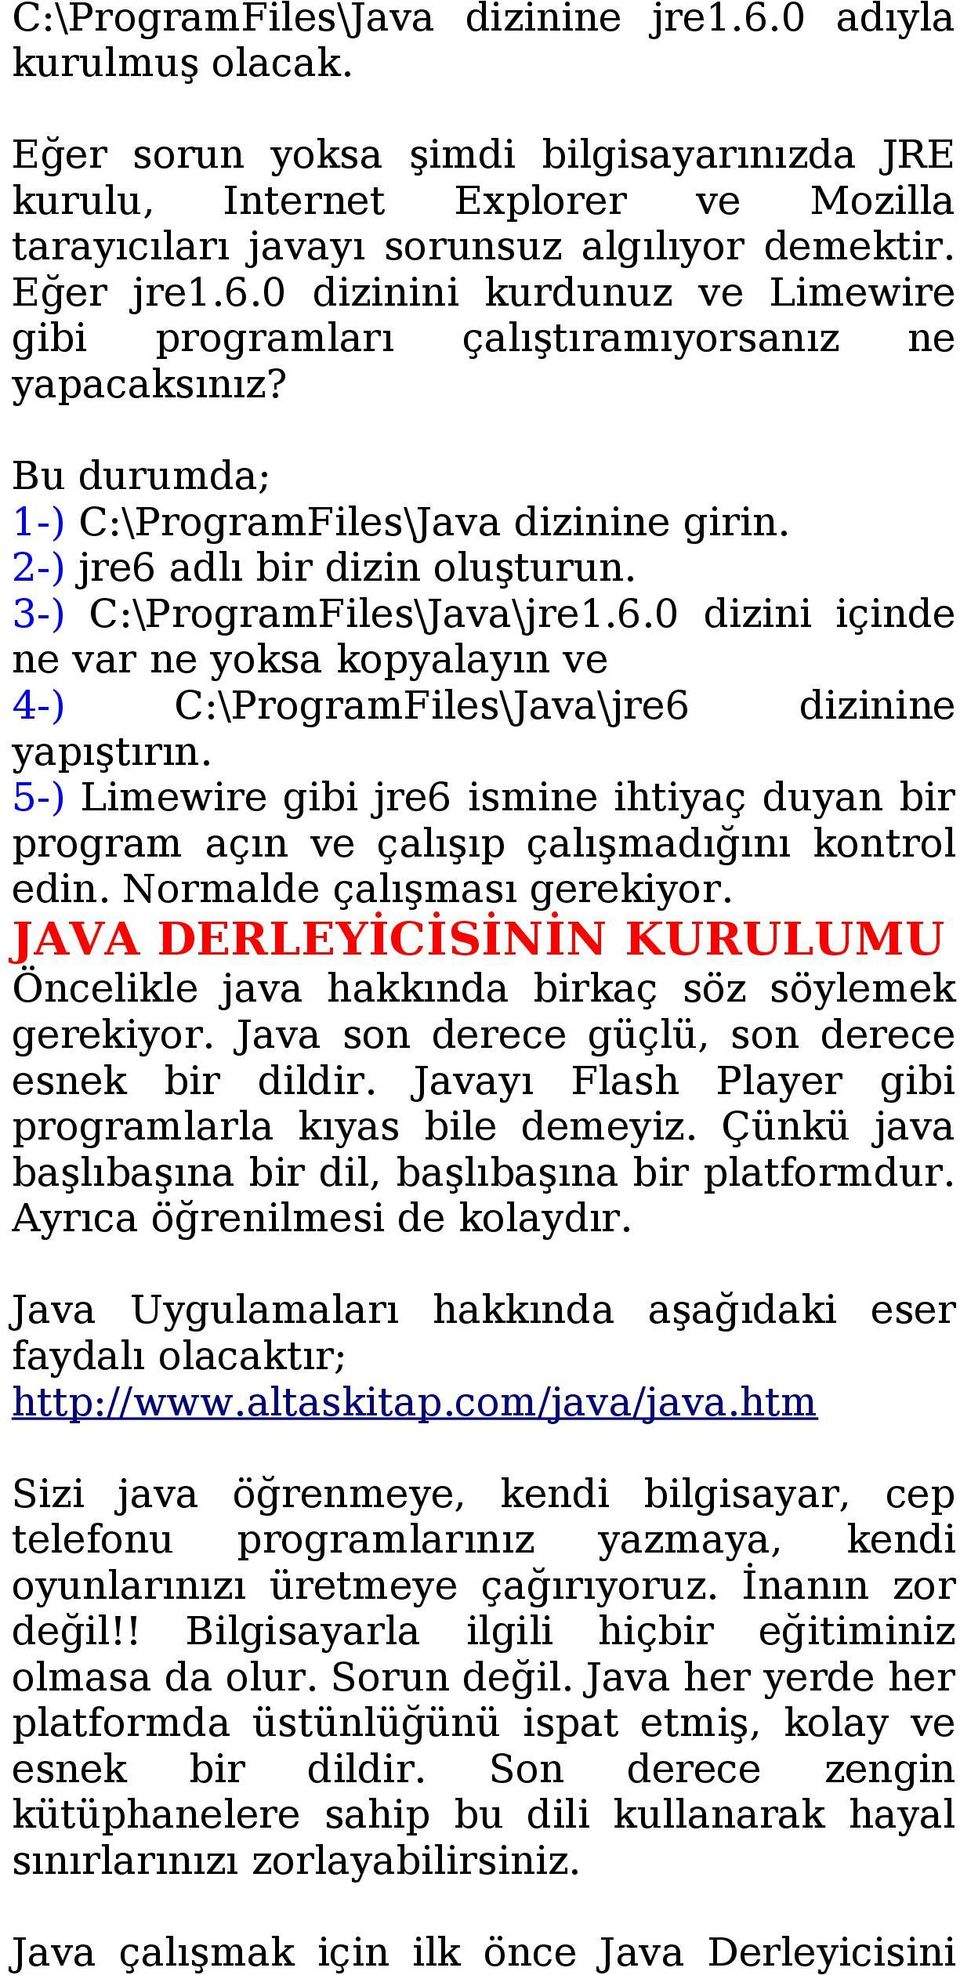 3-) C:\ProgramFiles\Java\jre1.6.0 dizini içinde ne var ne yoksa kopyalayın ve 4-) C:\ProgramFiles\Java\jre6 dizinine yapıştırın.